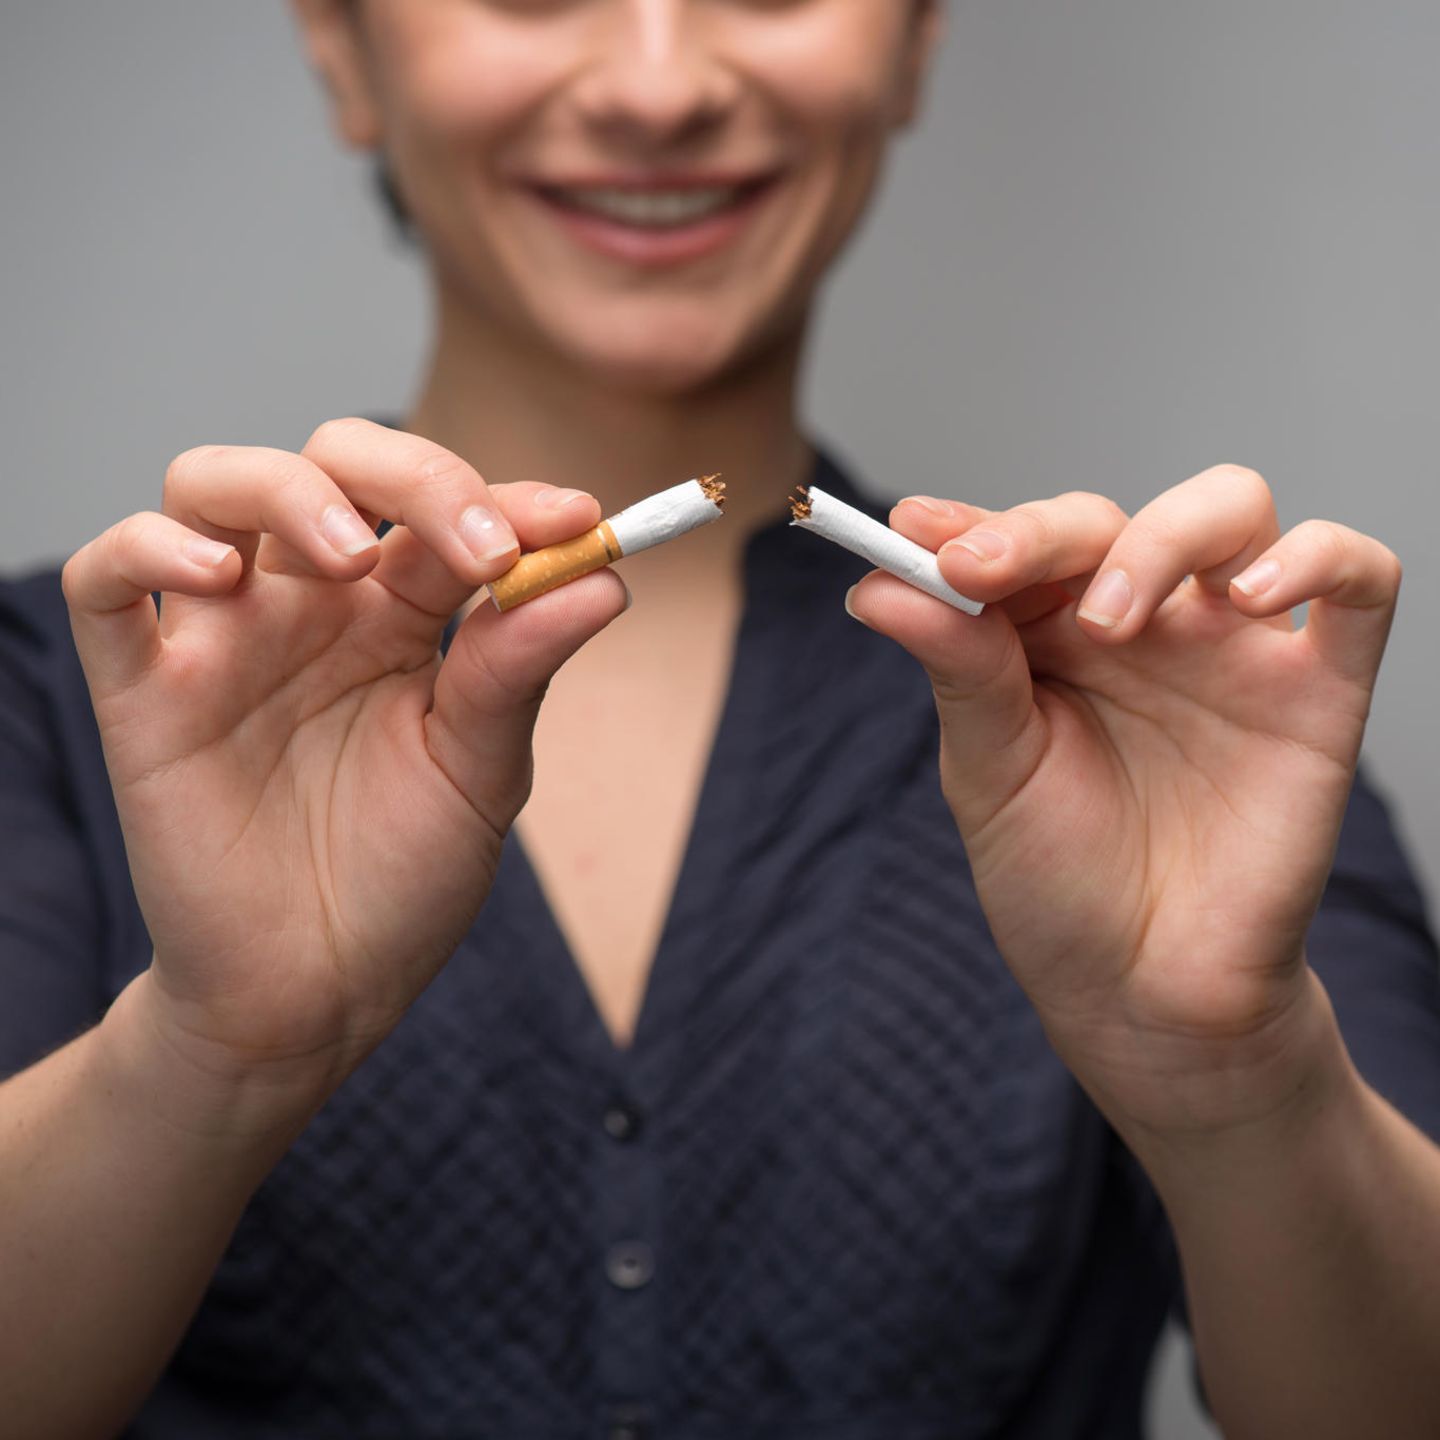 Nikotinpflaster als Alternative zum Rauchen?